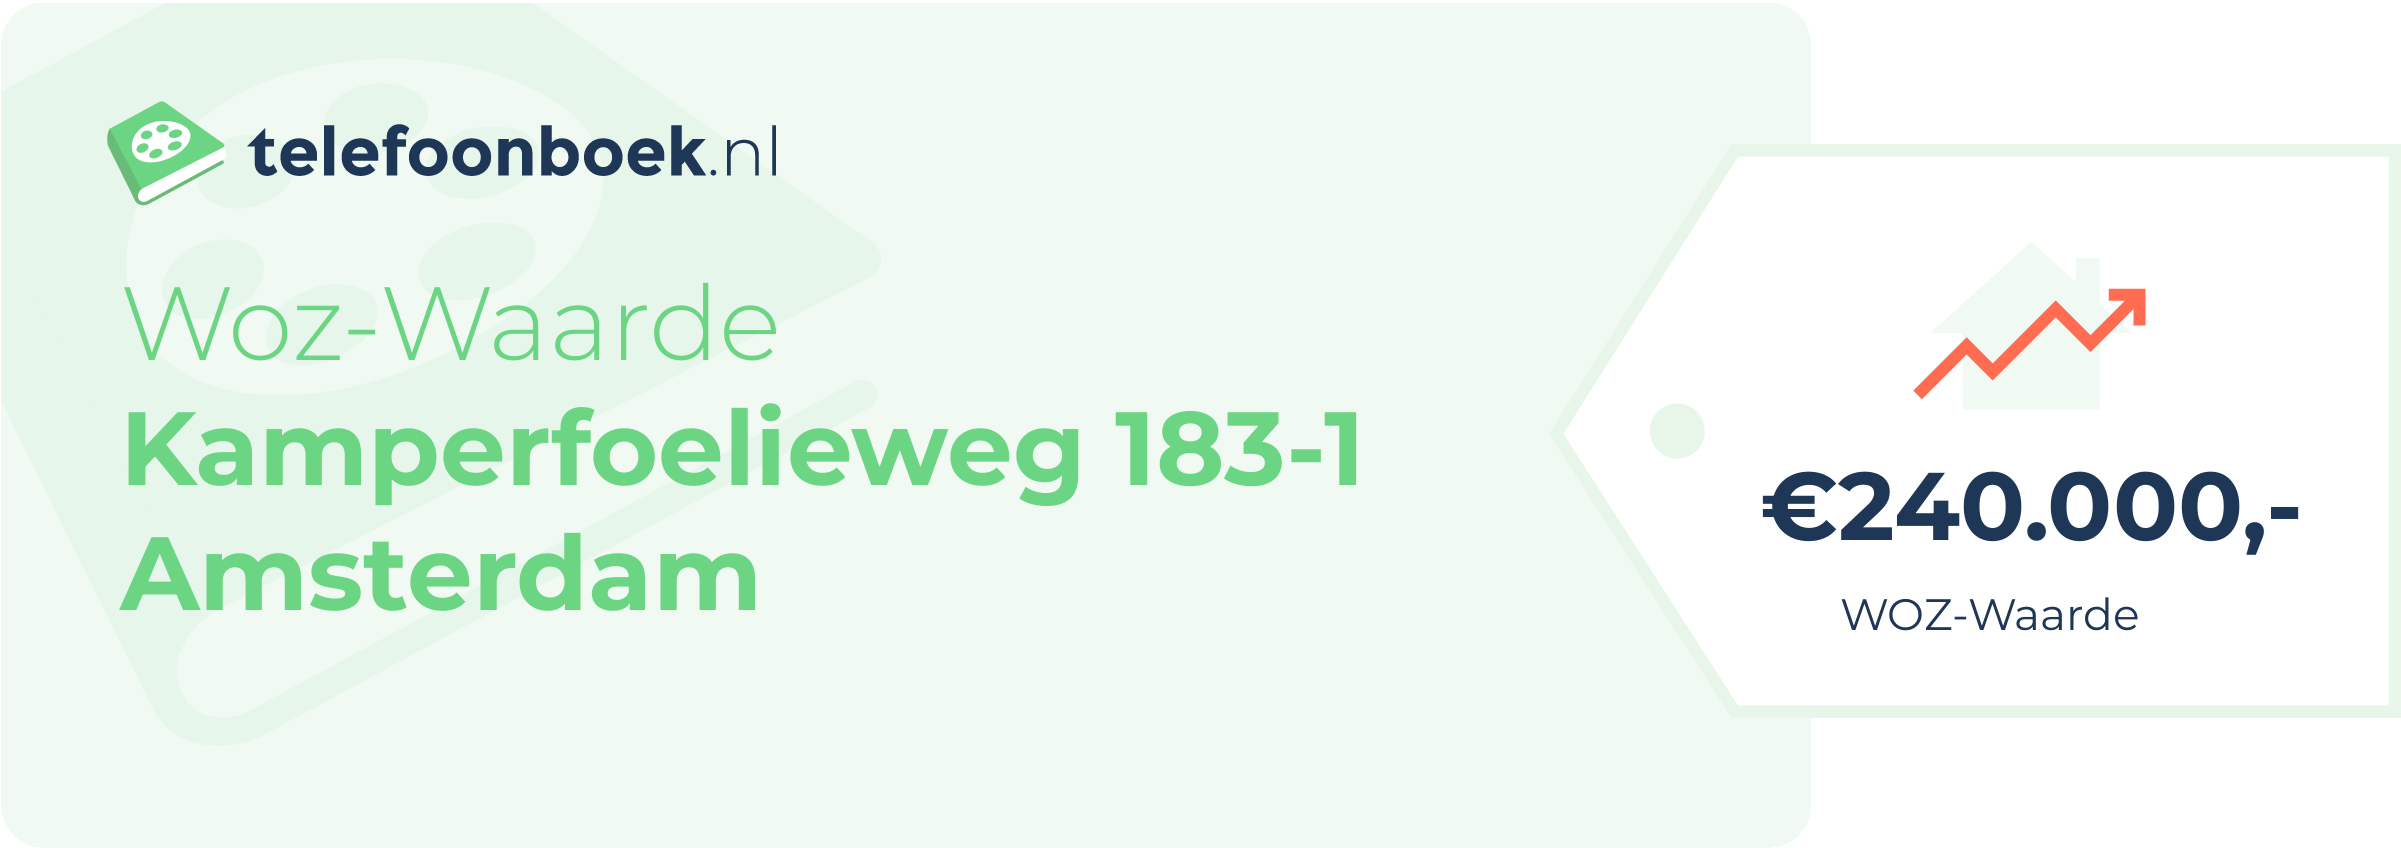 WOZ-waarde Kamperfoelieweg 183-1 Amsterdam